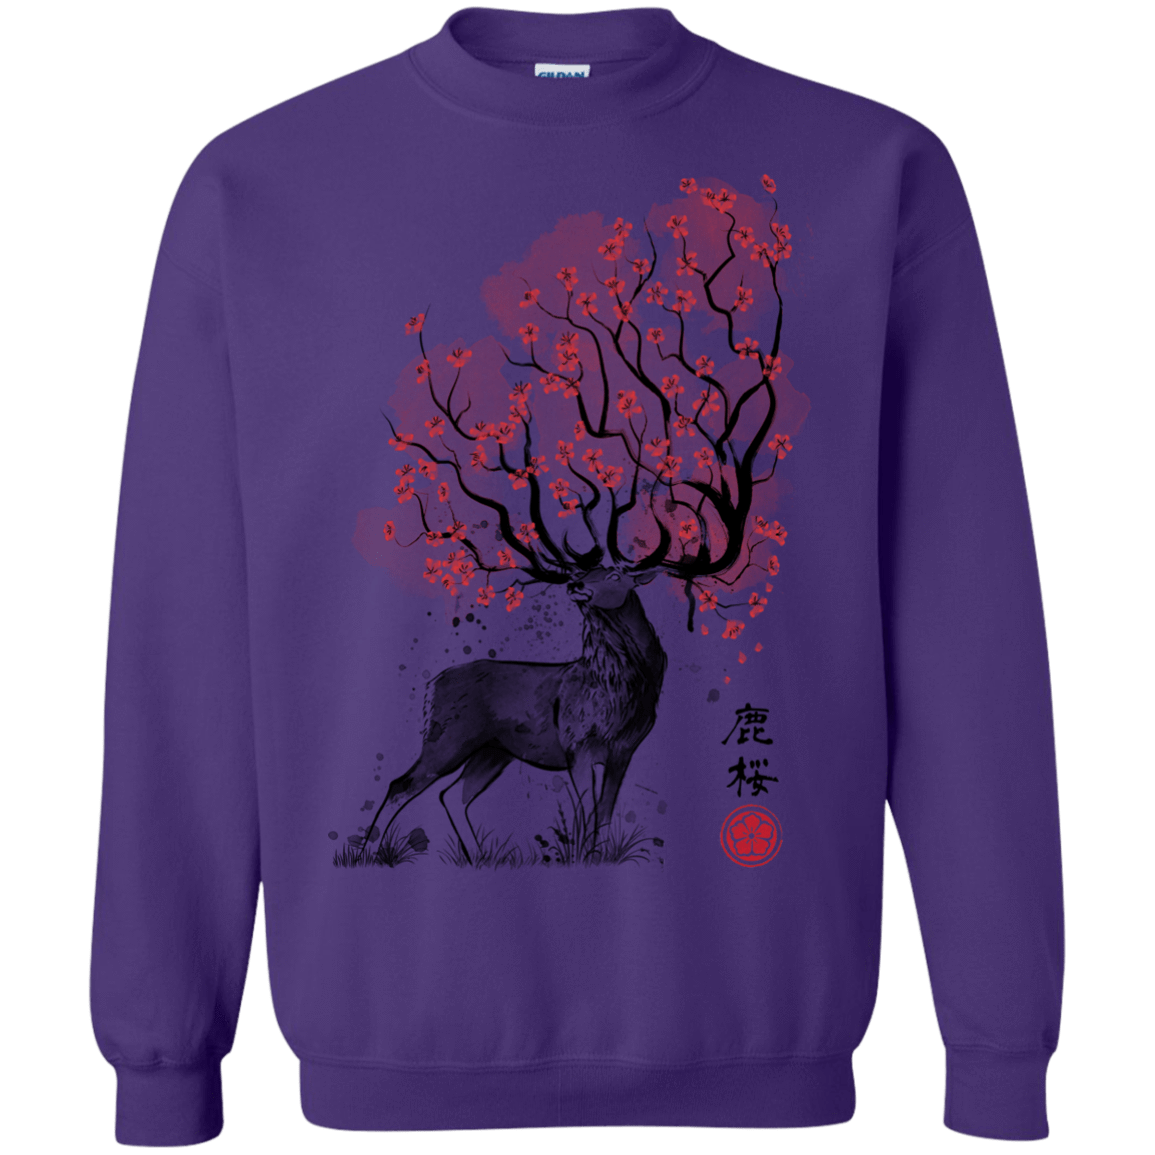 Sweatshirts Purple / S Sakura Deer Crewneck Sweatshirt